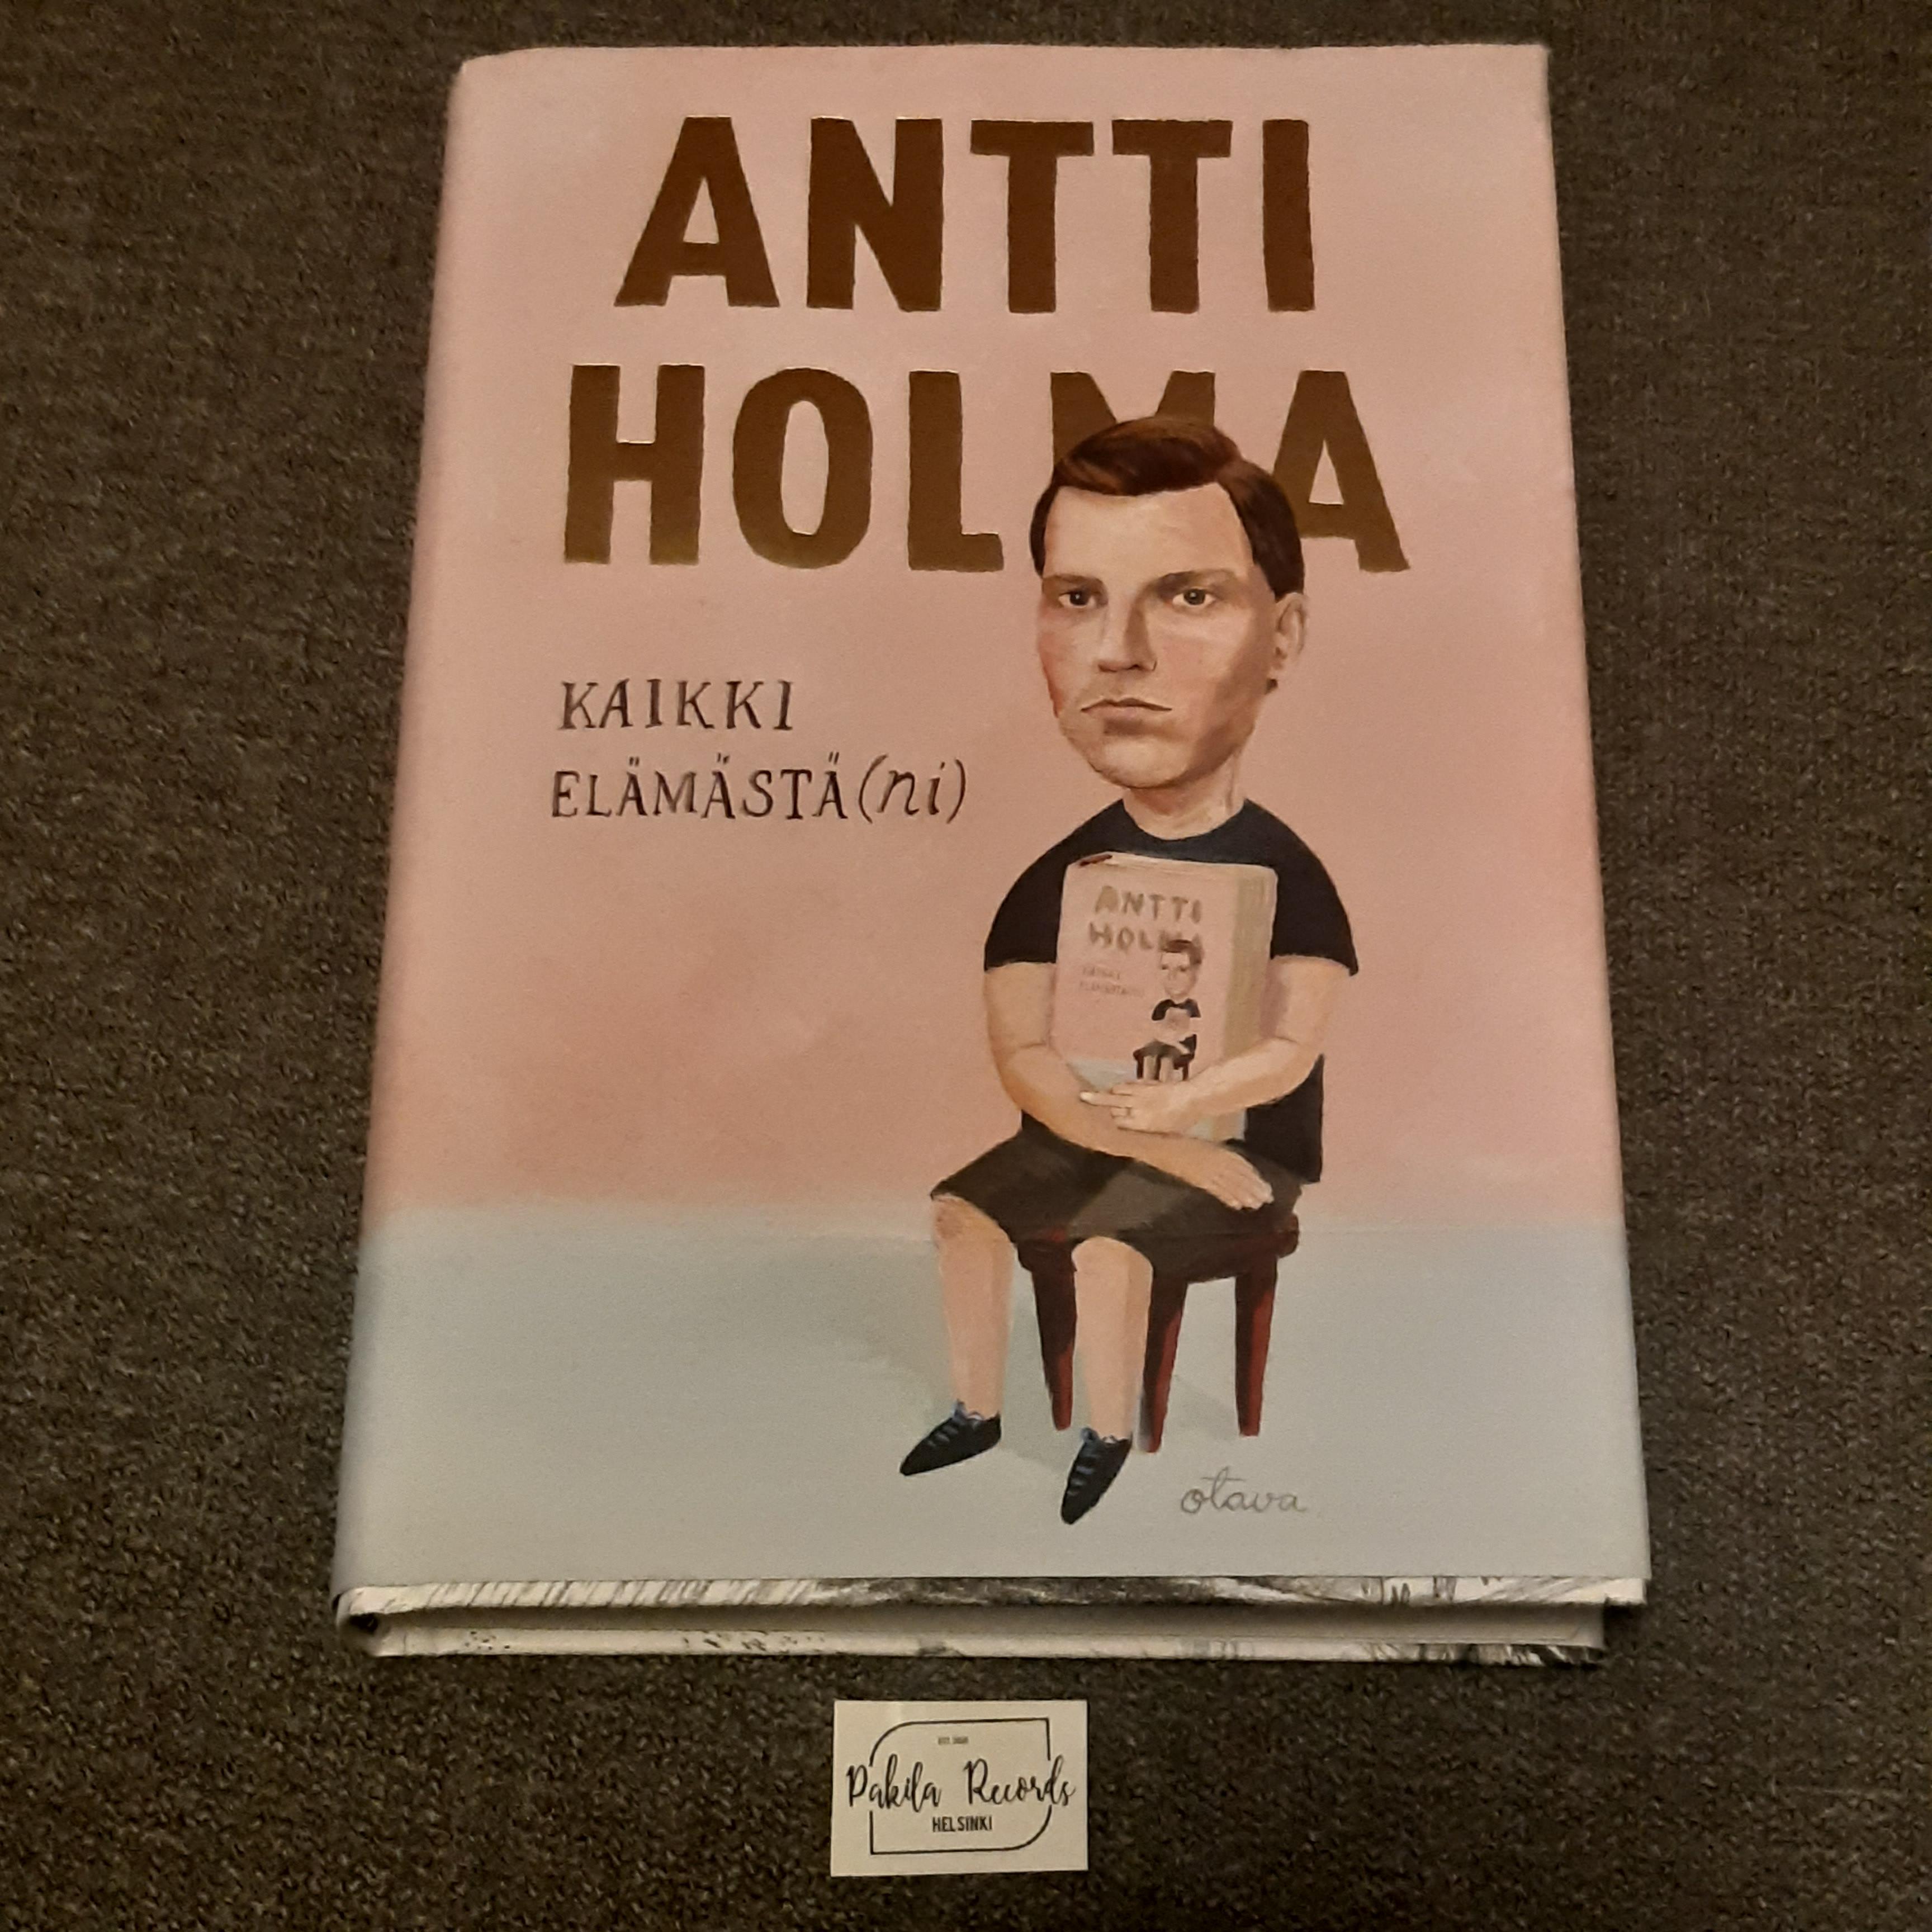 Kaikki elämästäni - Antti Holma - Kirja (käytetty)